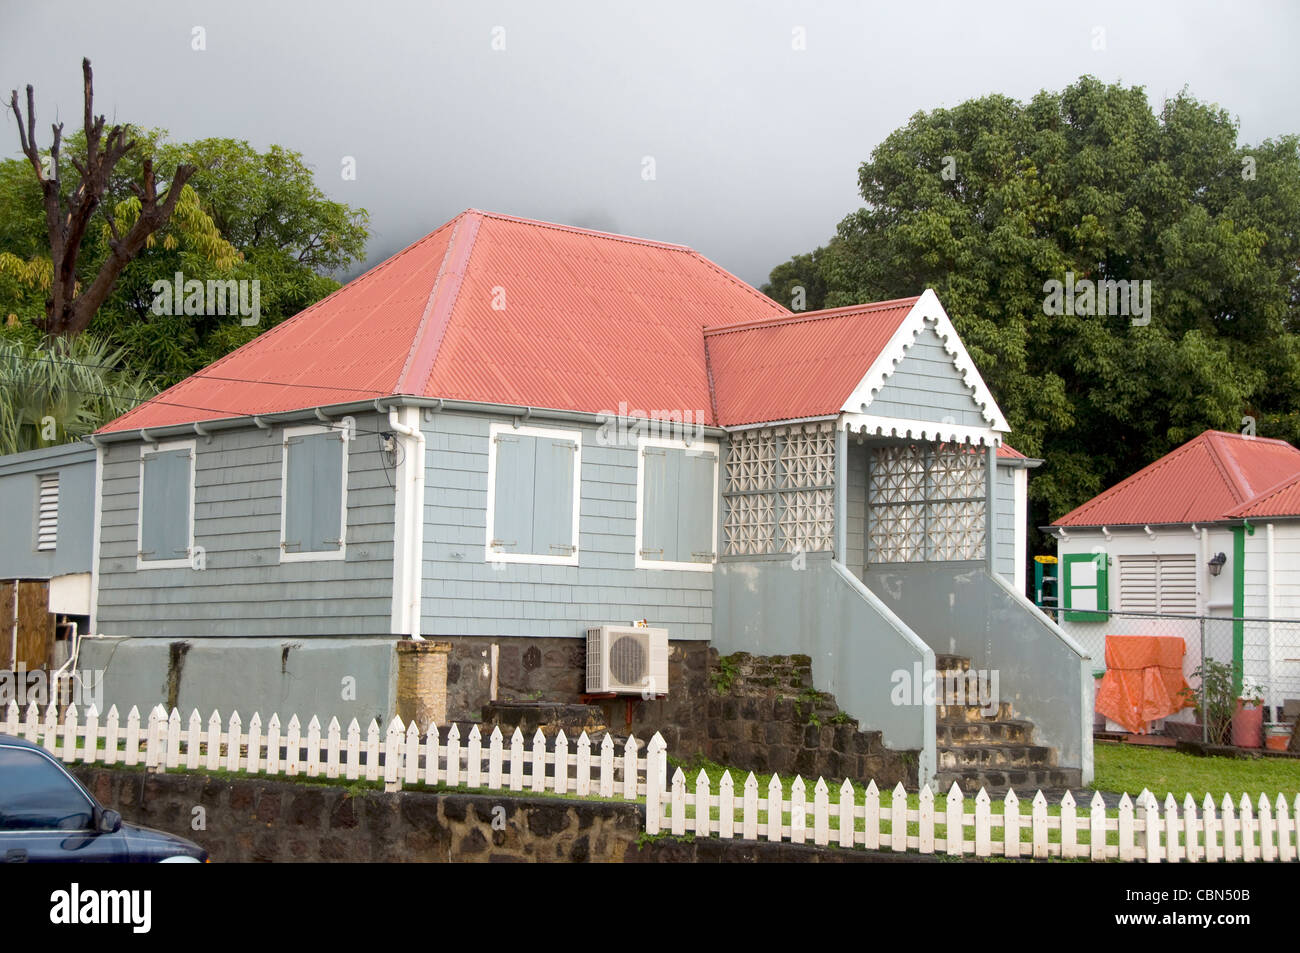 Maison typique de l'architecture d'épices Saint-eustache capitale Oranjestad Antilles Néerlandaises Statia island Banque D'Images